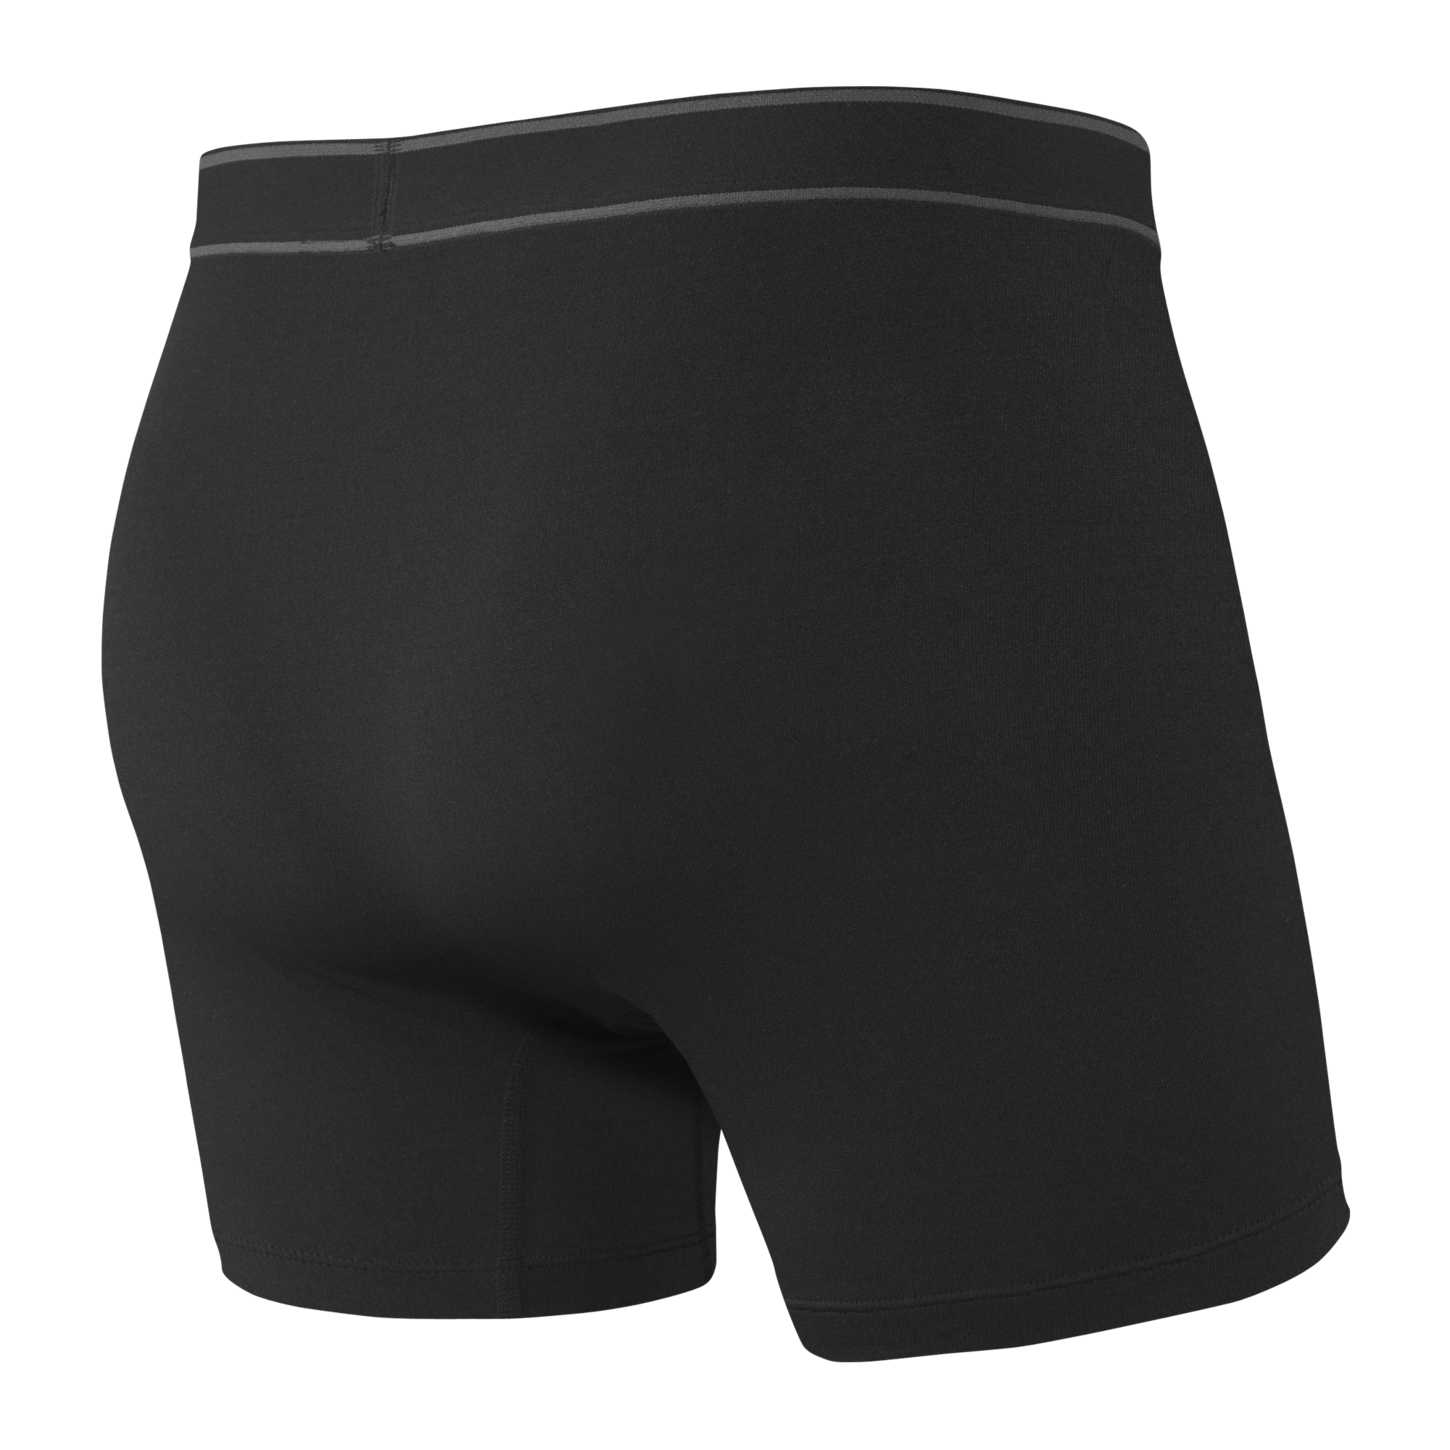 SAXX Daytripper Boxer Brief Underwear Black Men's Underwear Saxx L 